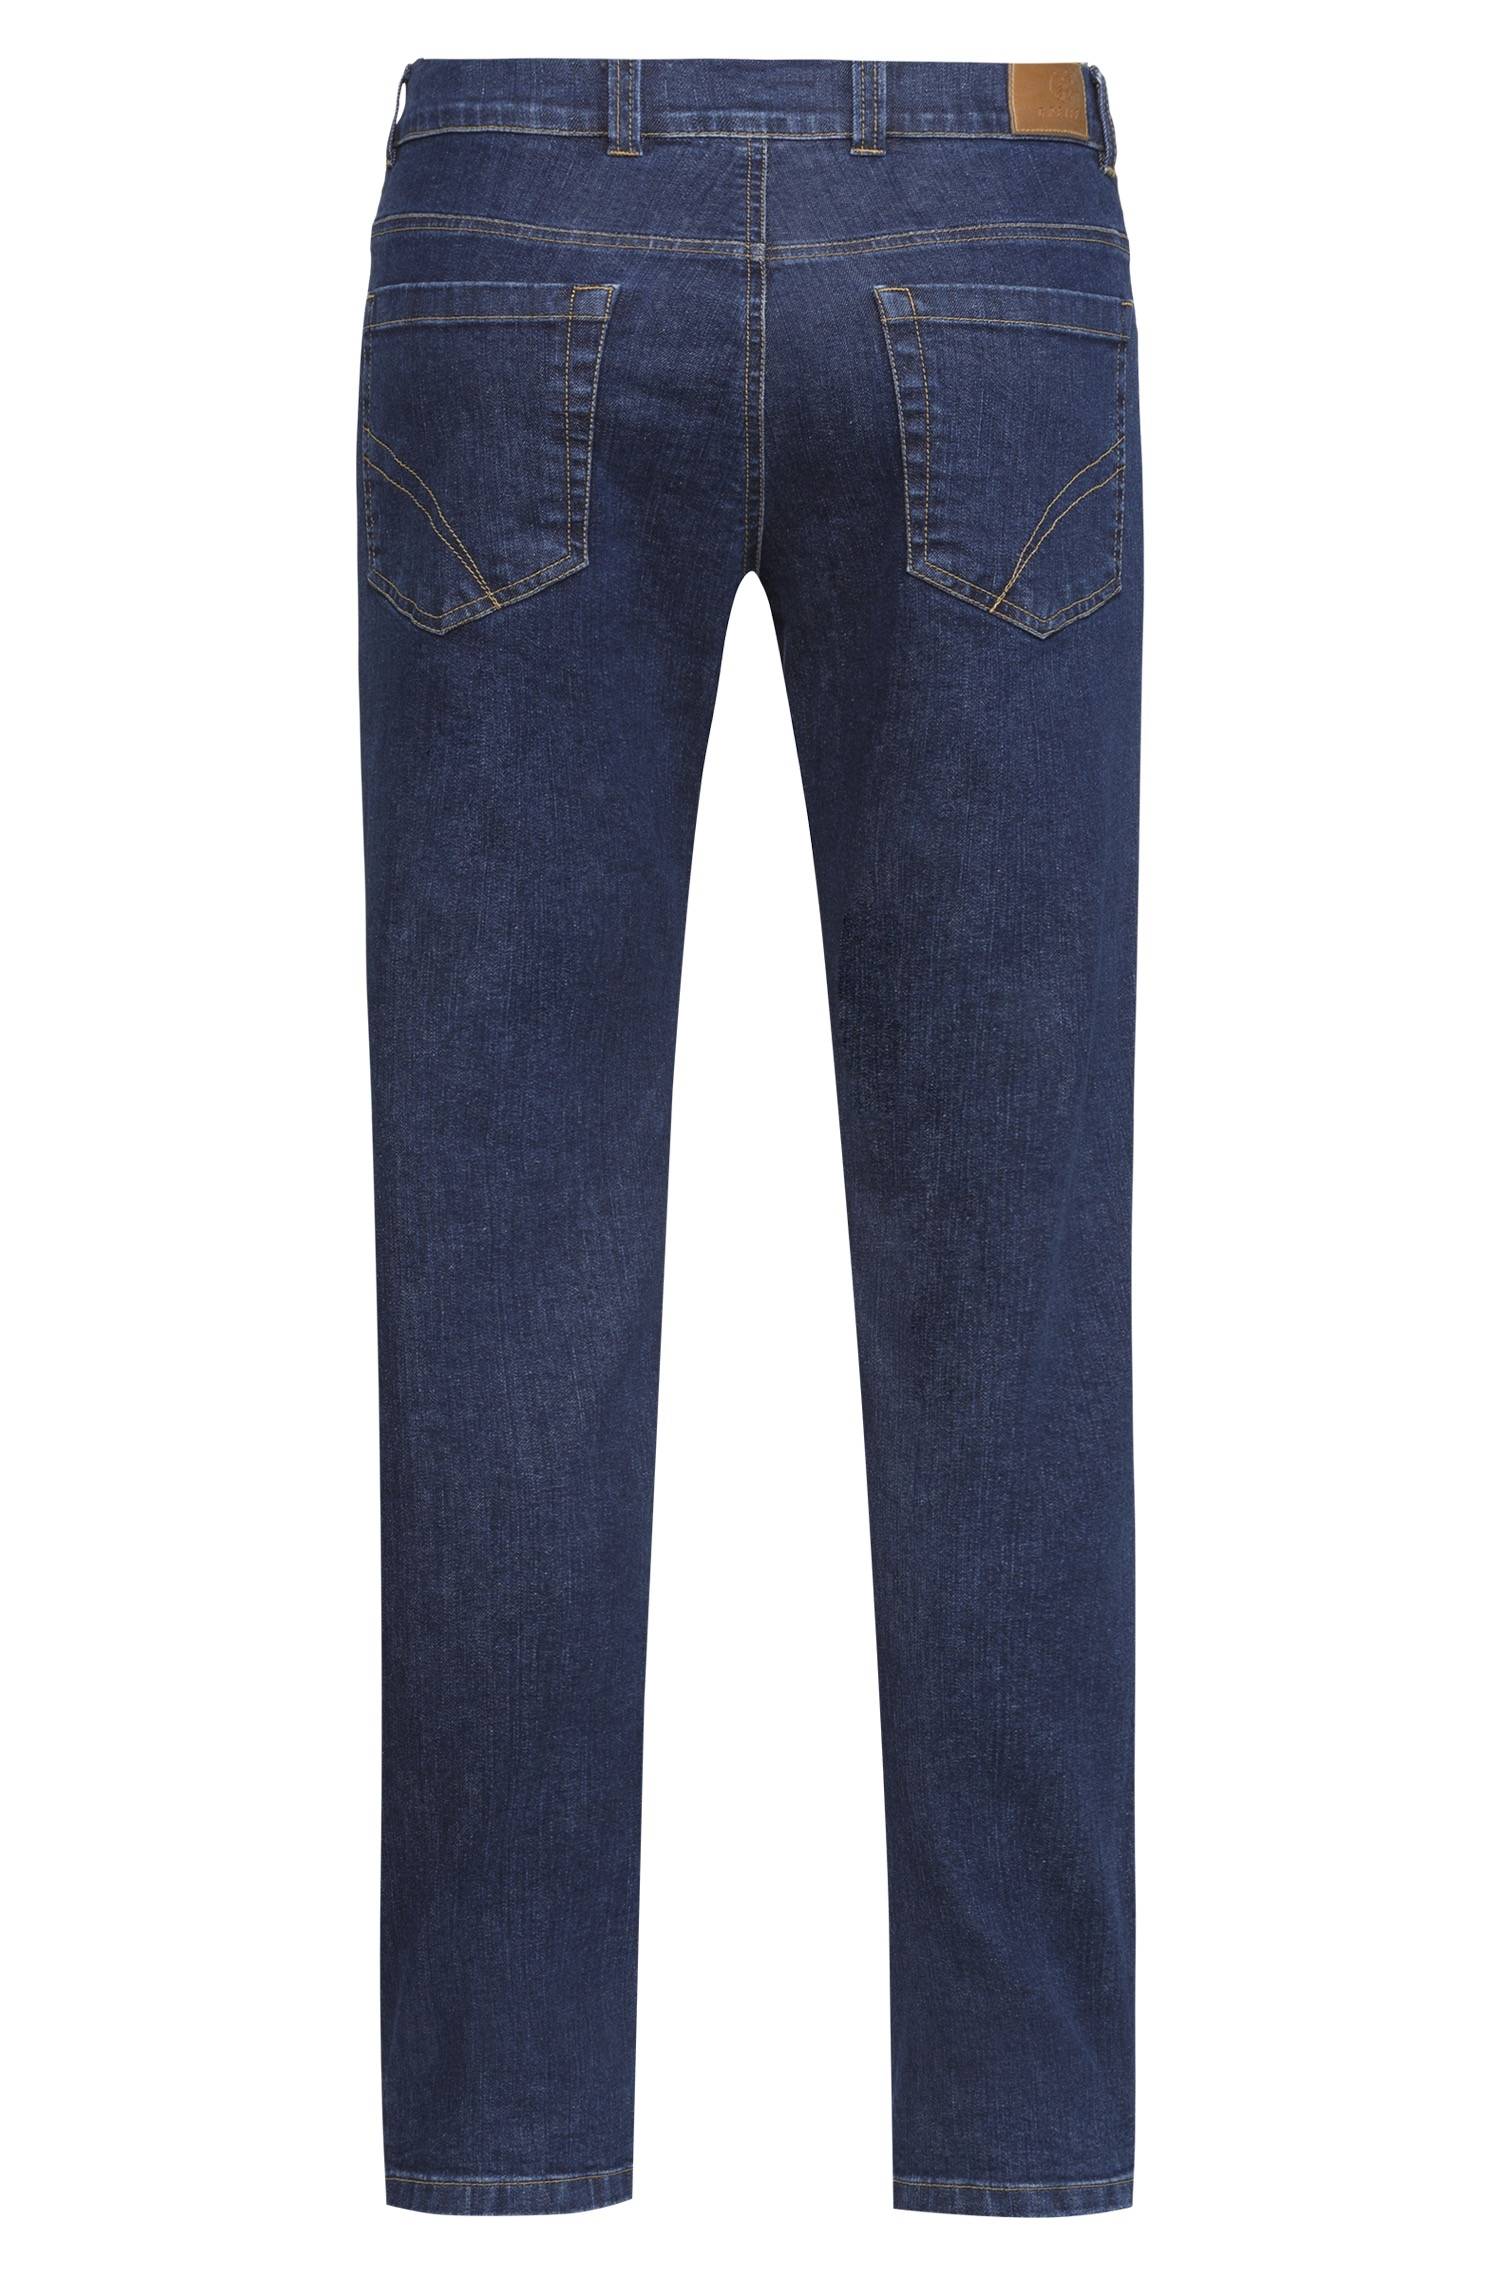 Herren Jeans CASUAL Regular Fit